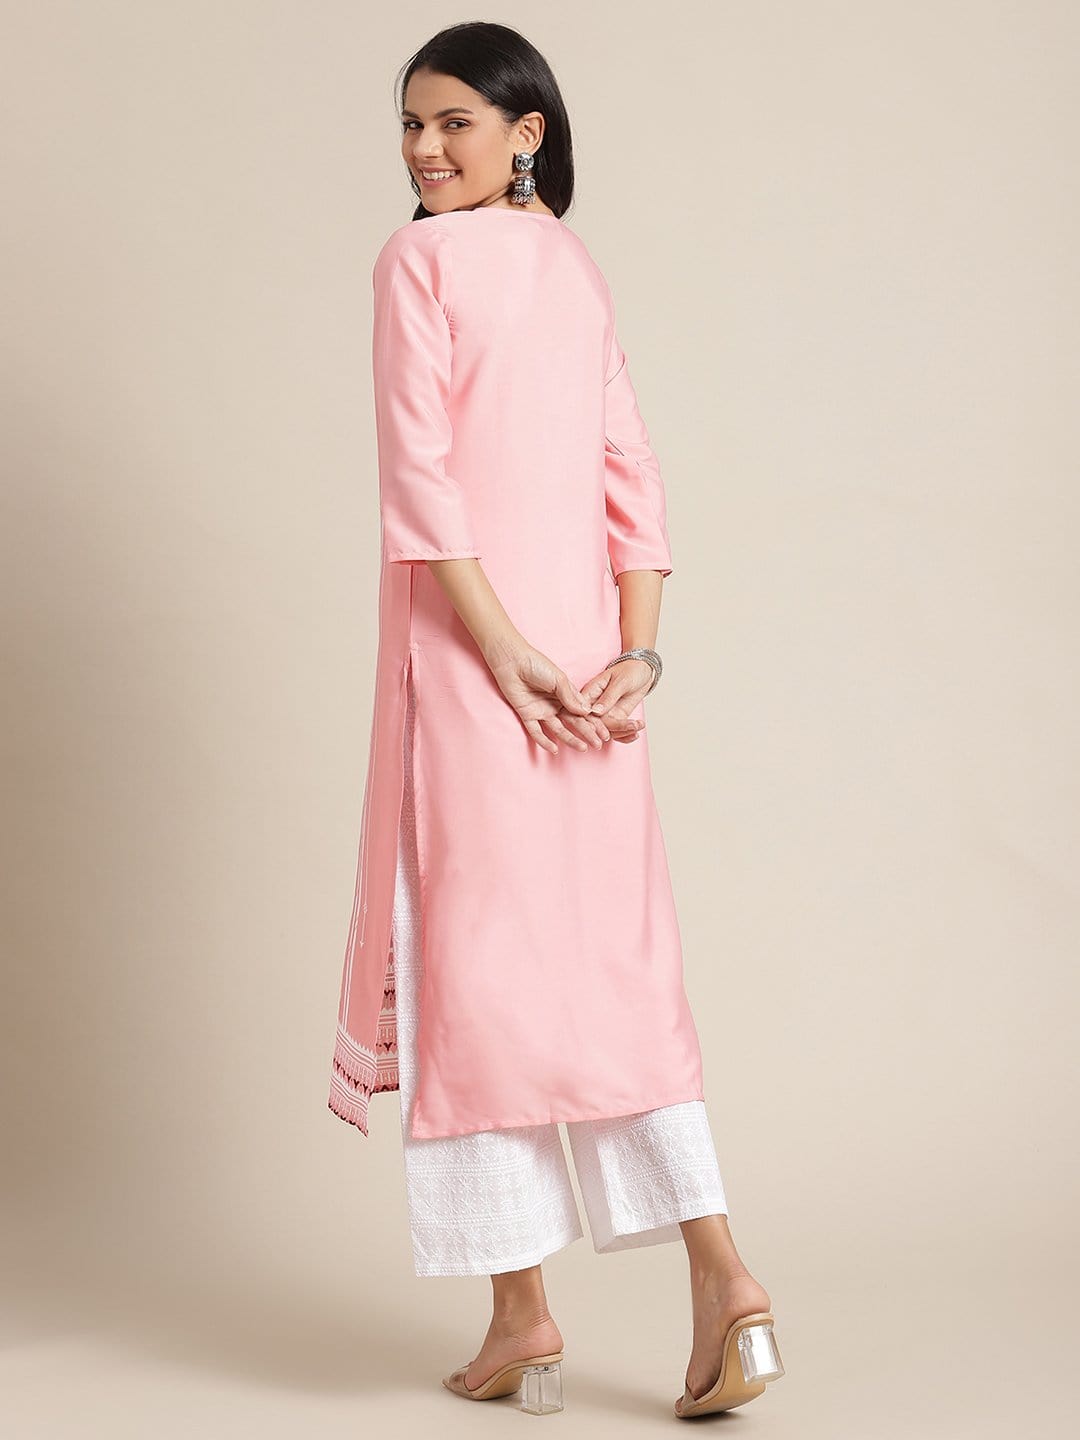 Women's KSUT Pink And White Geometric Printed Straight Kurta With 3/4Th Sleeves - Varanga